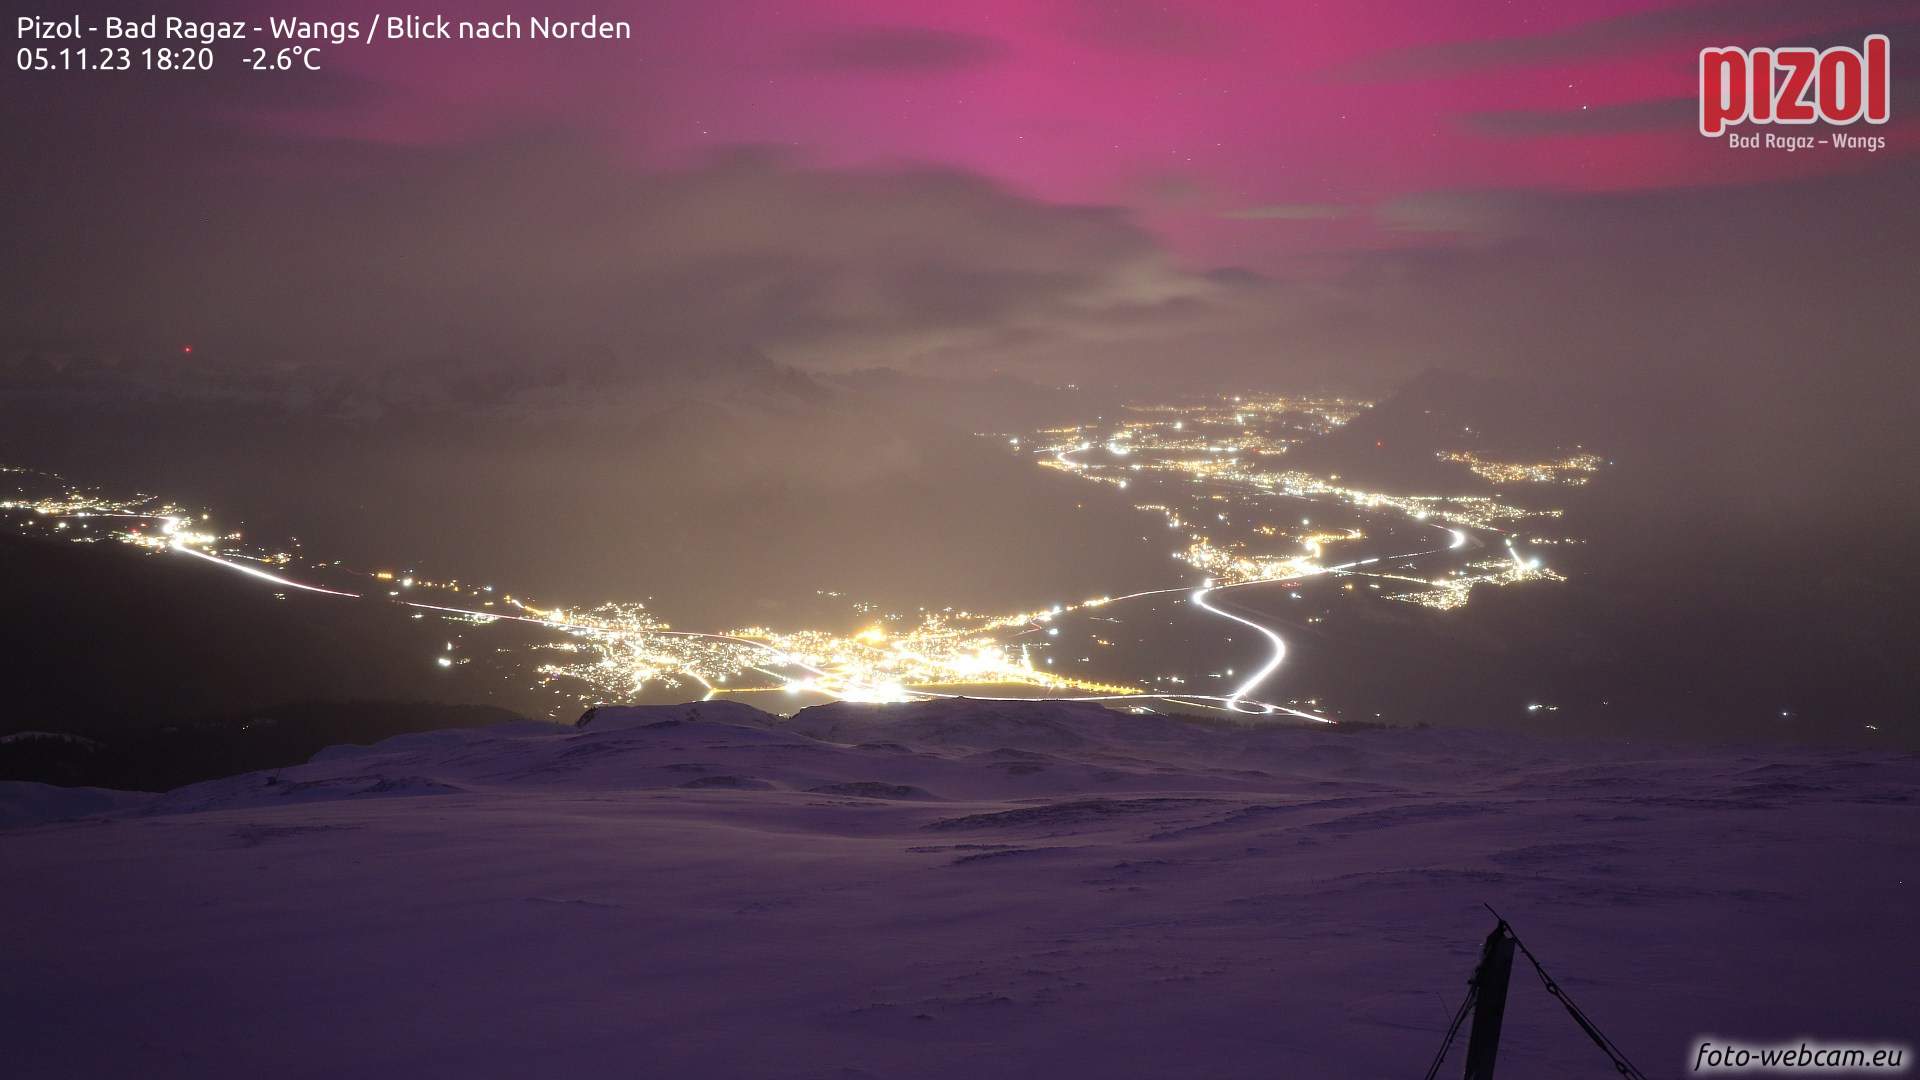 Fig. 1: L'aurora boreale sulla valle del Reno vista da Pizol (foto scattata alle 18:20); Fonte: www.foto-webcam.eu